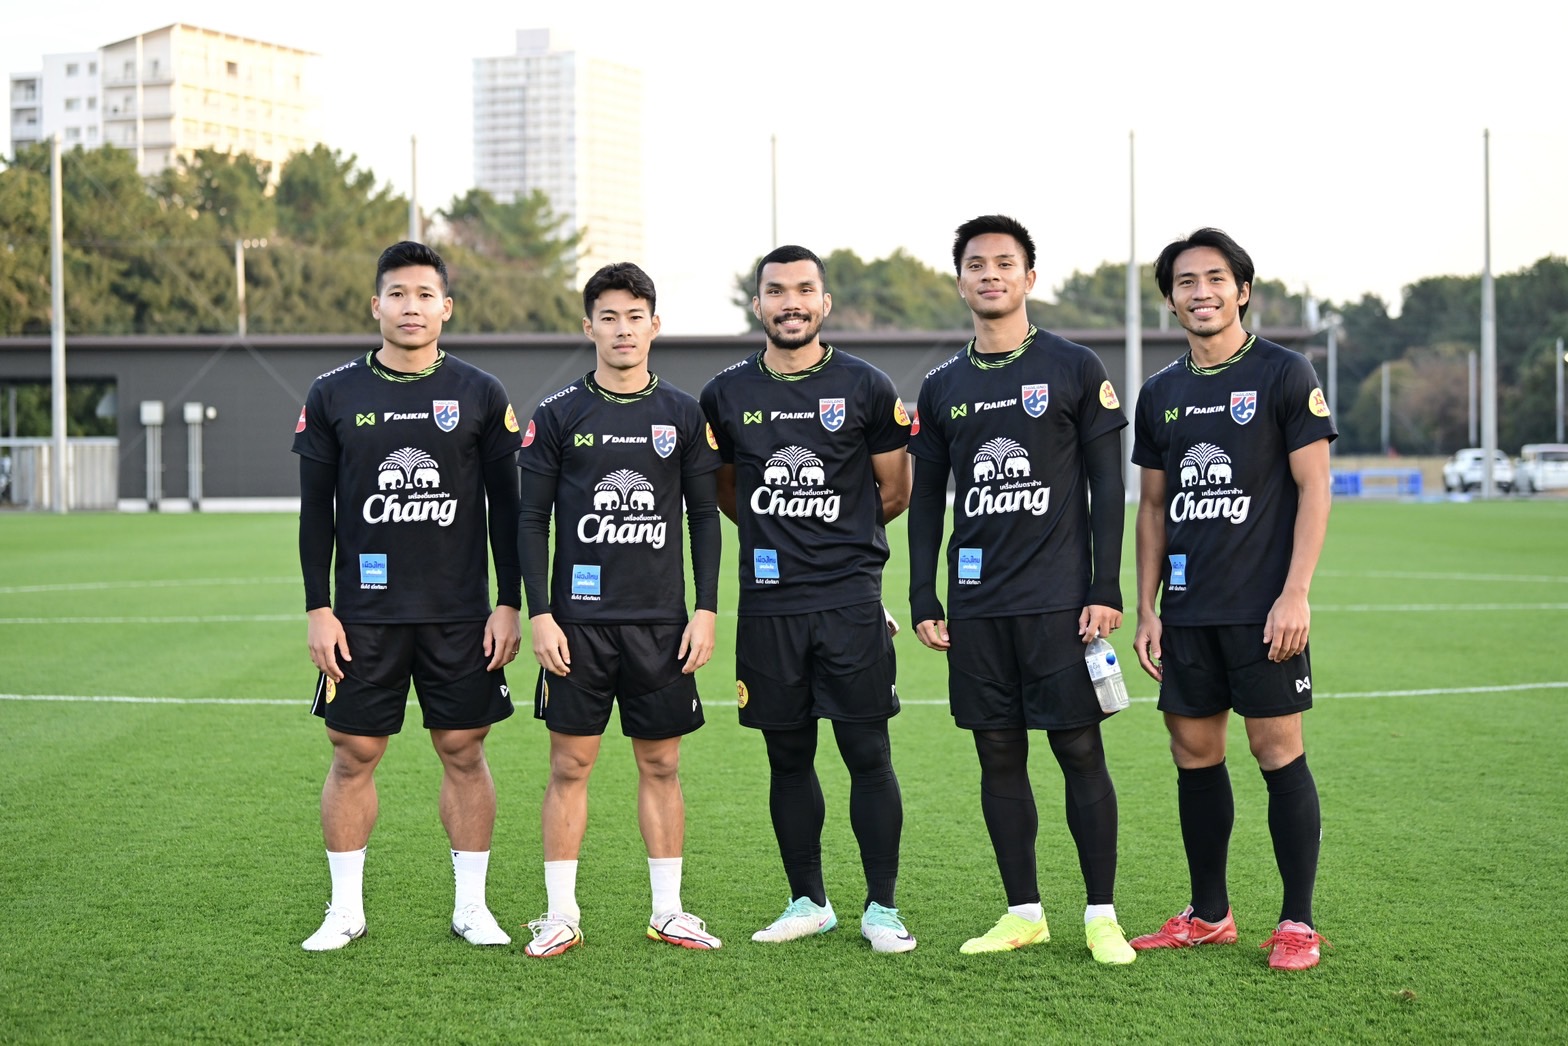 ประกาศหมายเลขเสื้อ 23 แข้งช้างศึก ชุดอุ่นเครื่อง International Friendly Match กับทีมชาติญี่ปุ่น